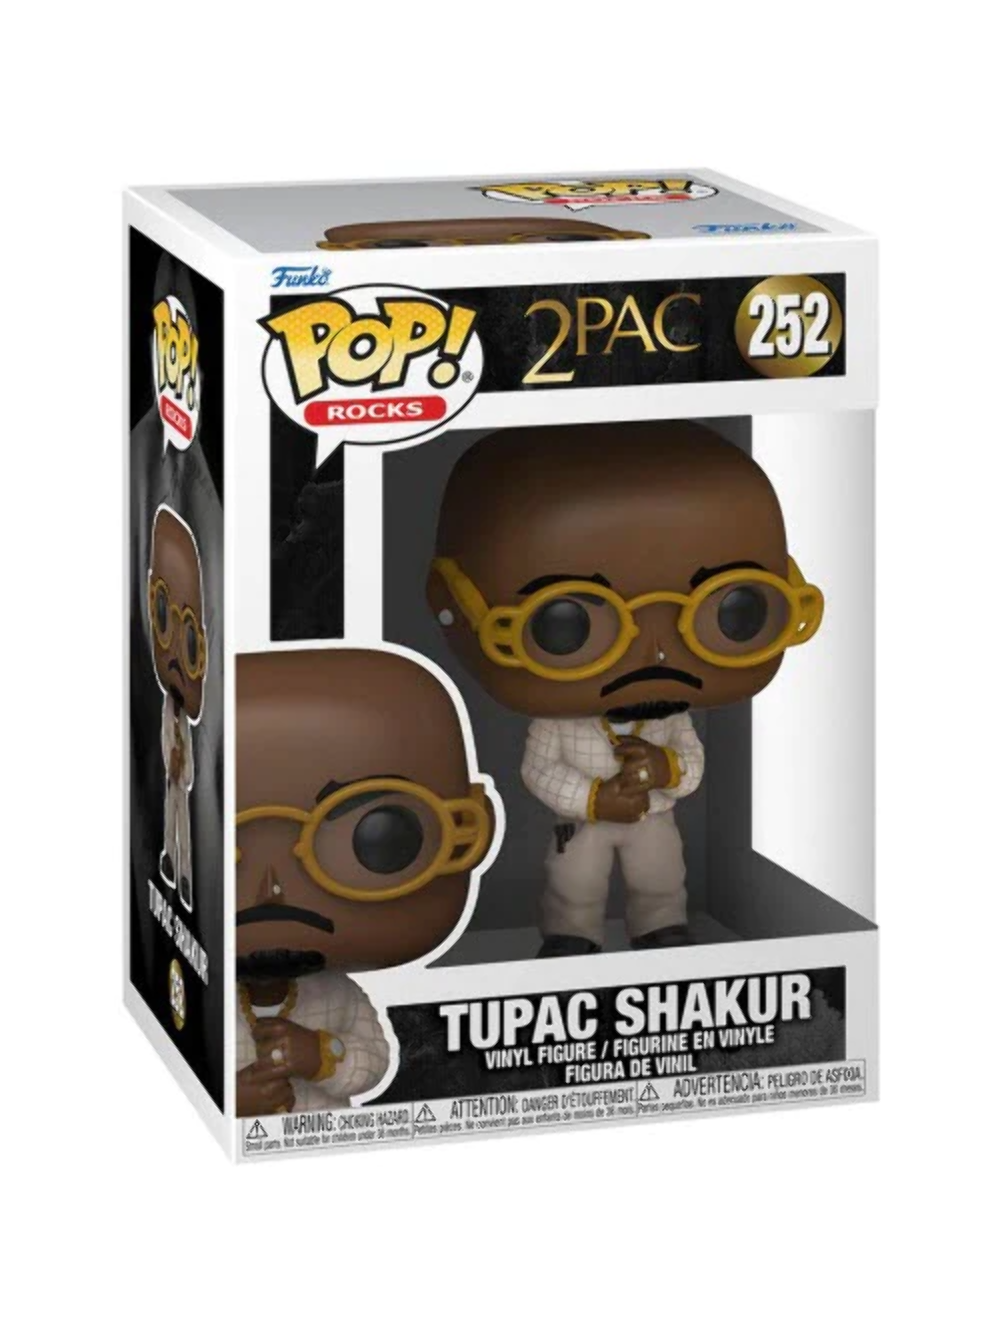 Tupac: Funko Pop! Rocks - 2Pac - Tupac Shakur (Vinyl Figure 252)